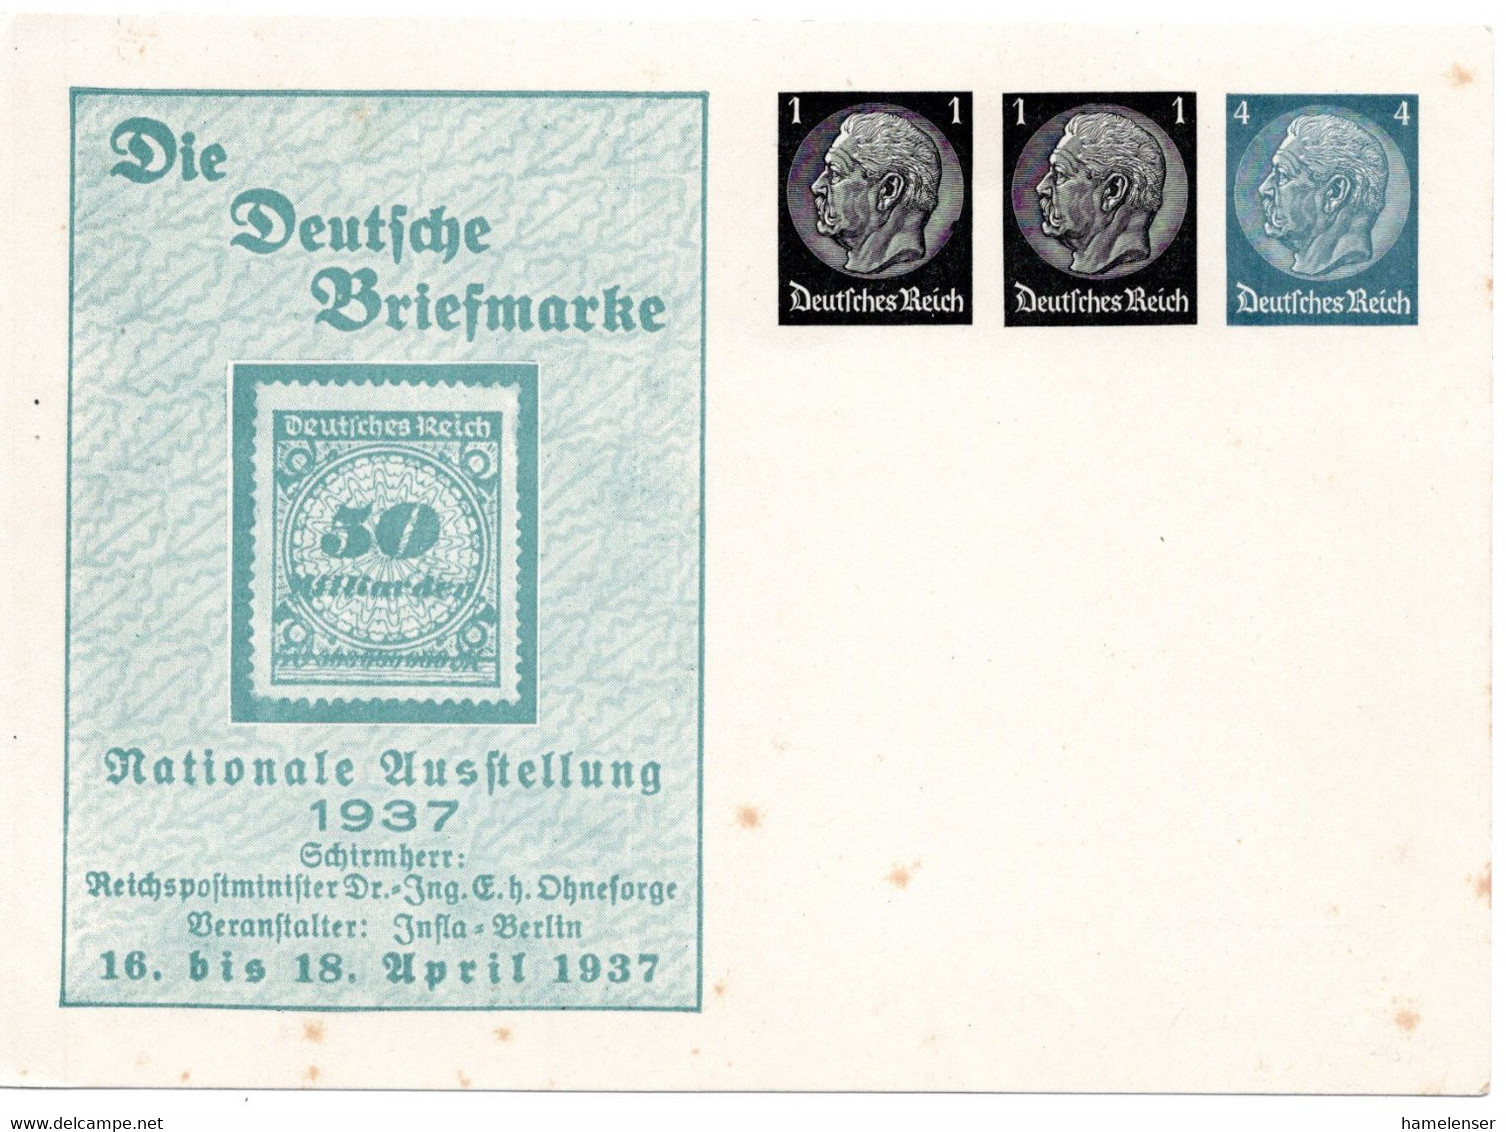 56183 - Deutsches Reich - 1937 - 1&1&4Pfg Hindenburg PGAKte "Die Deutsche Briefmarke", Ungebraucht, Etw Stockig - Timbres Sur Timbres